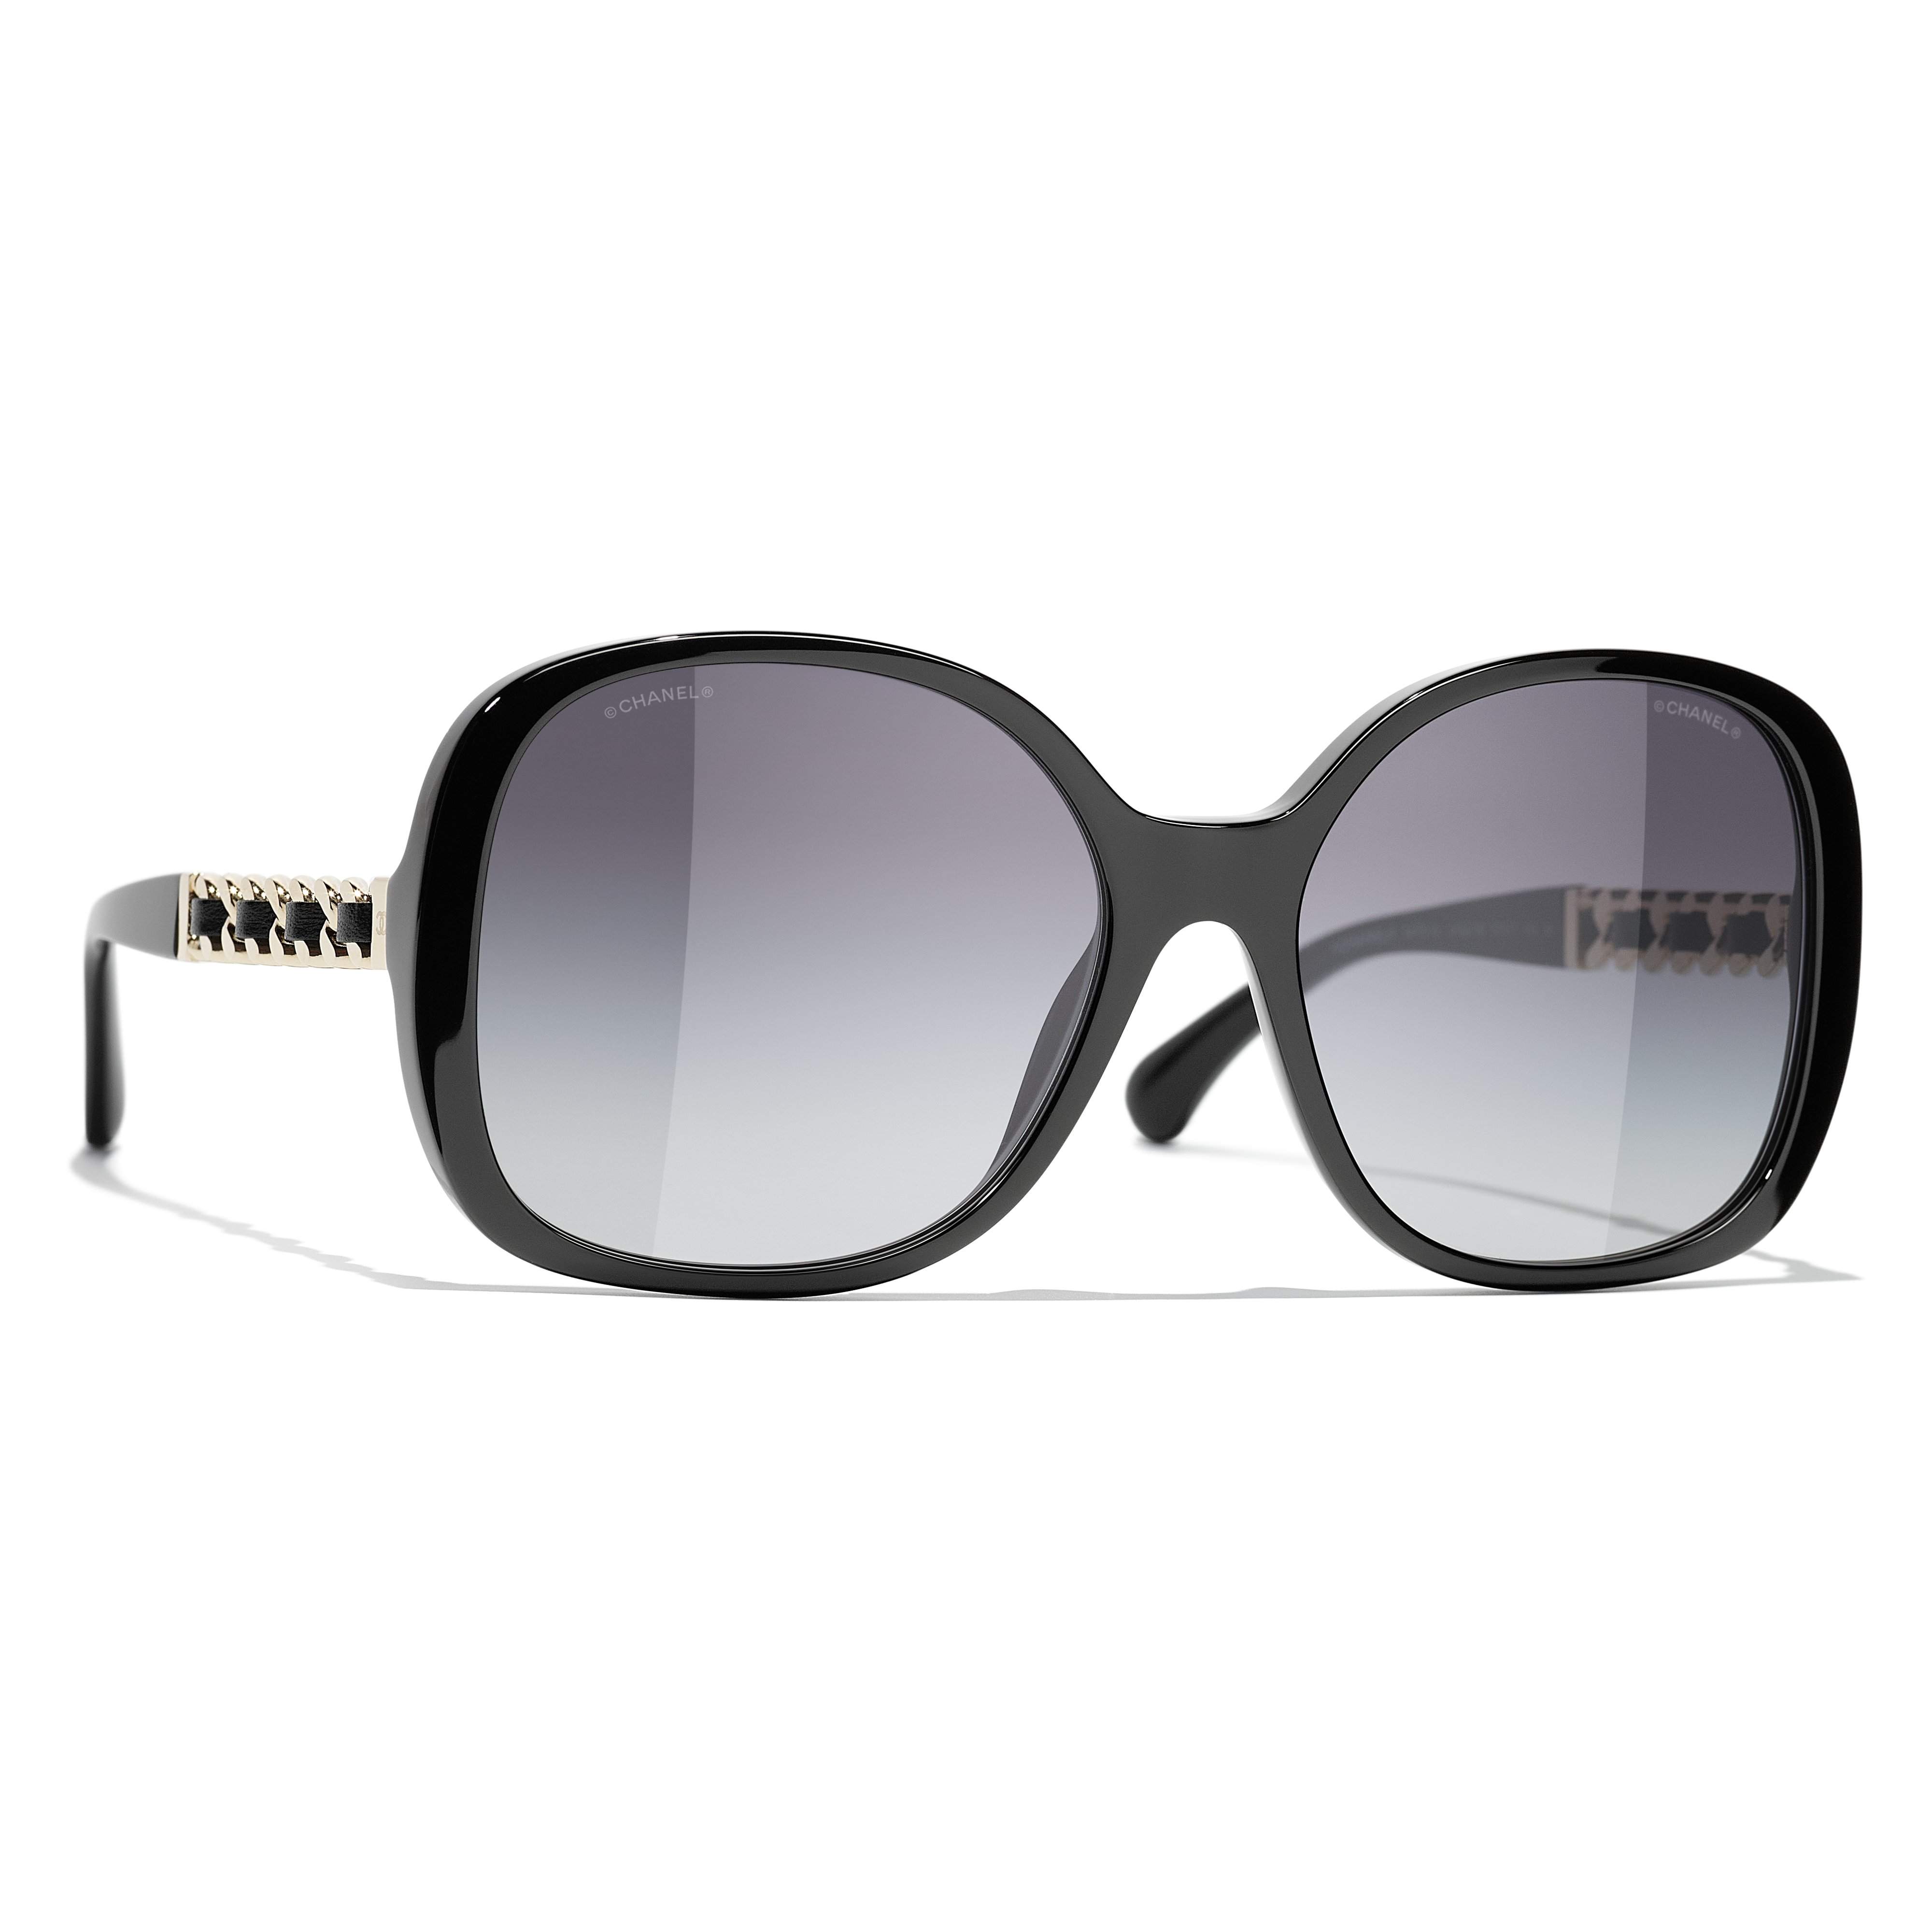 Sunglasses Chanel CH5414 1710/S6 54-20 Black in stock, Price 275,00 €